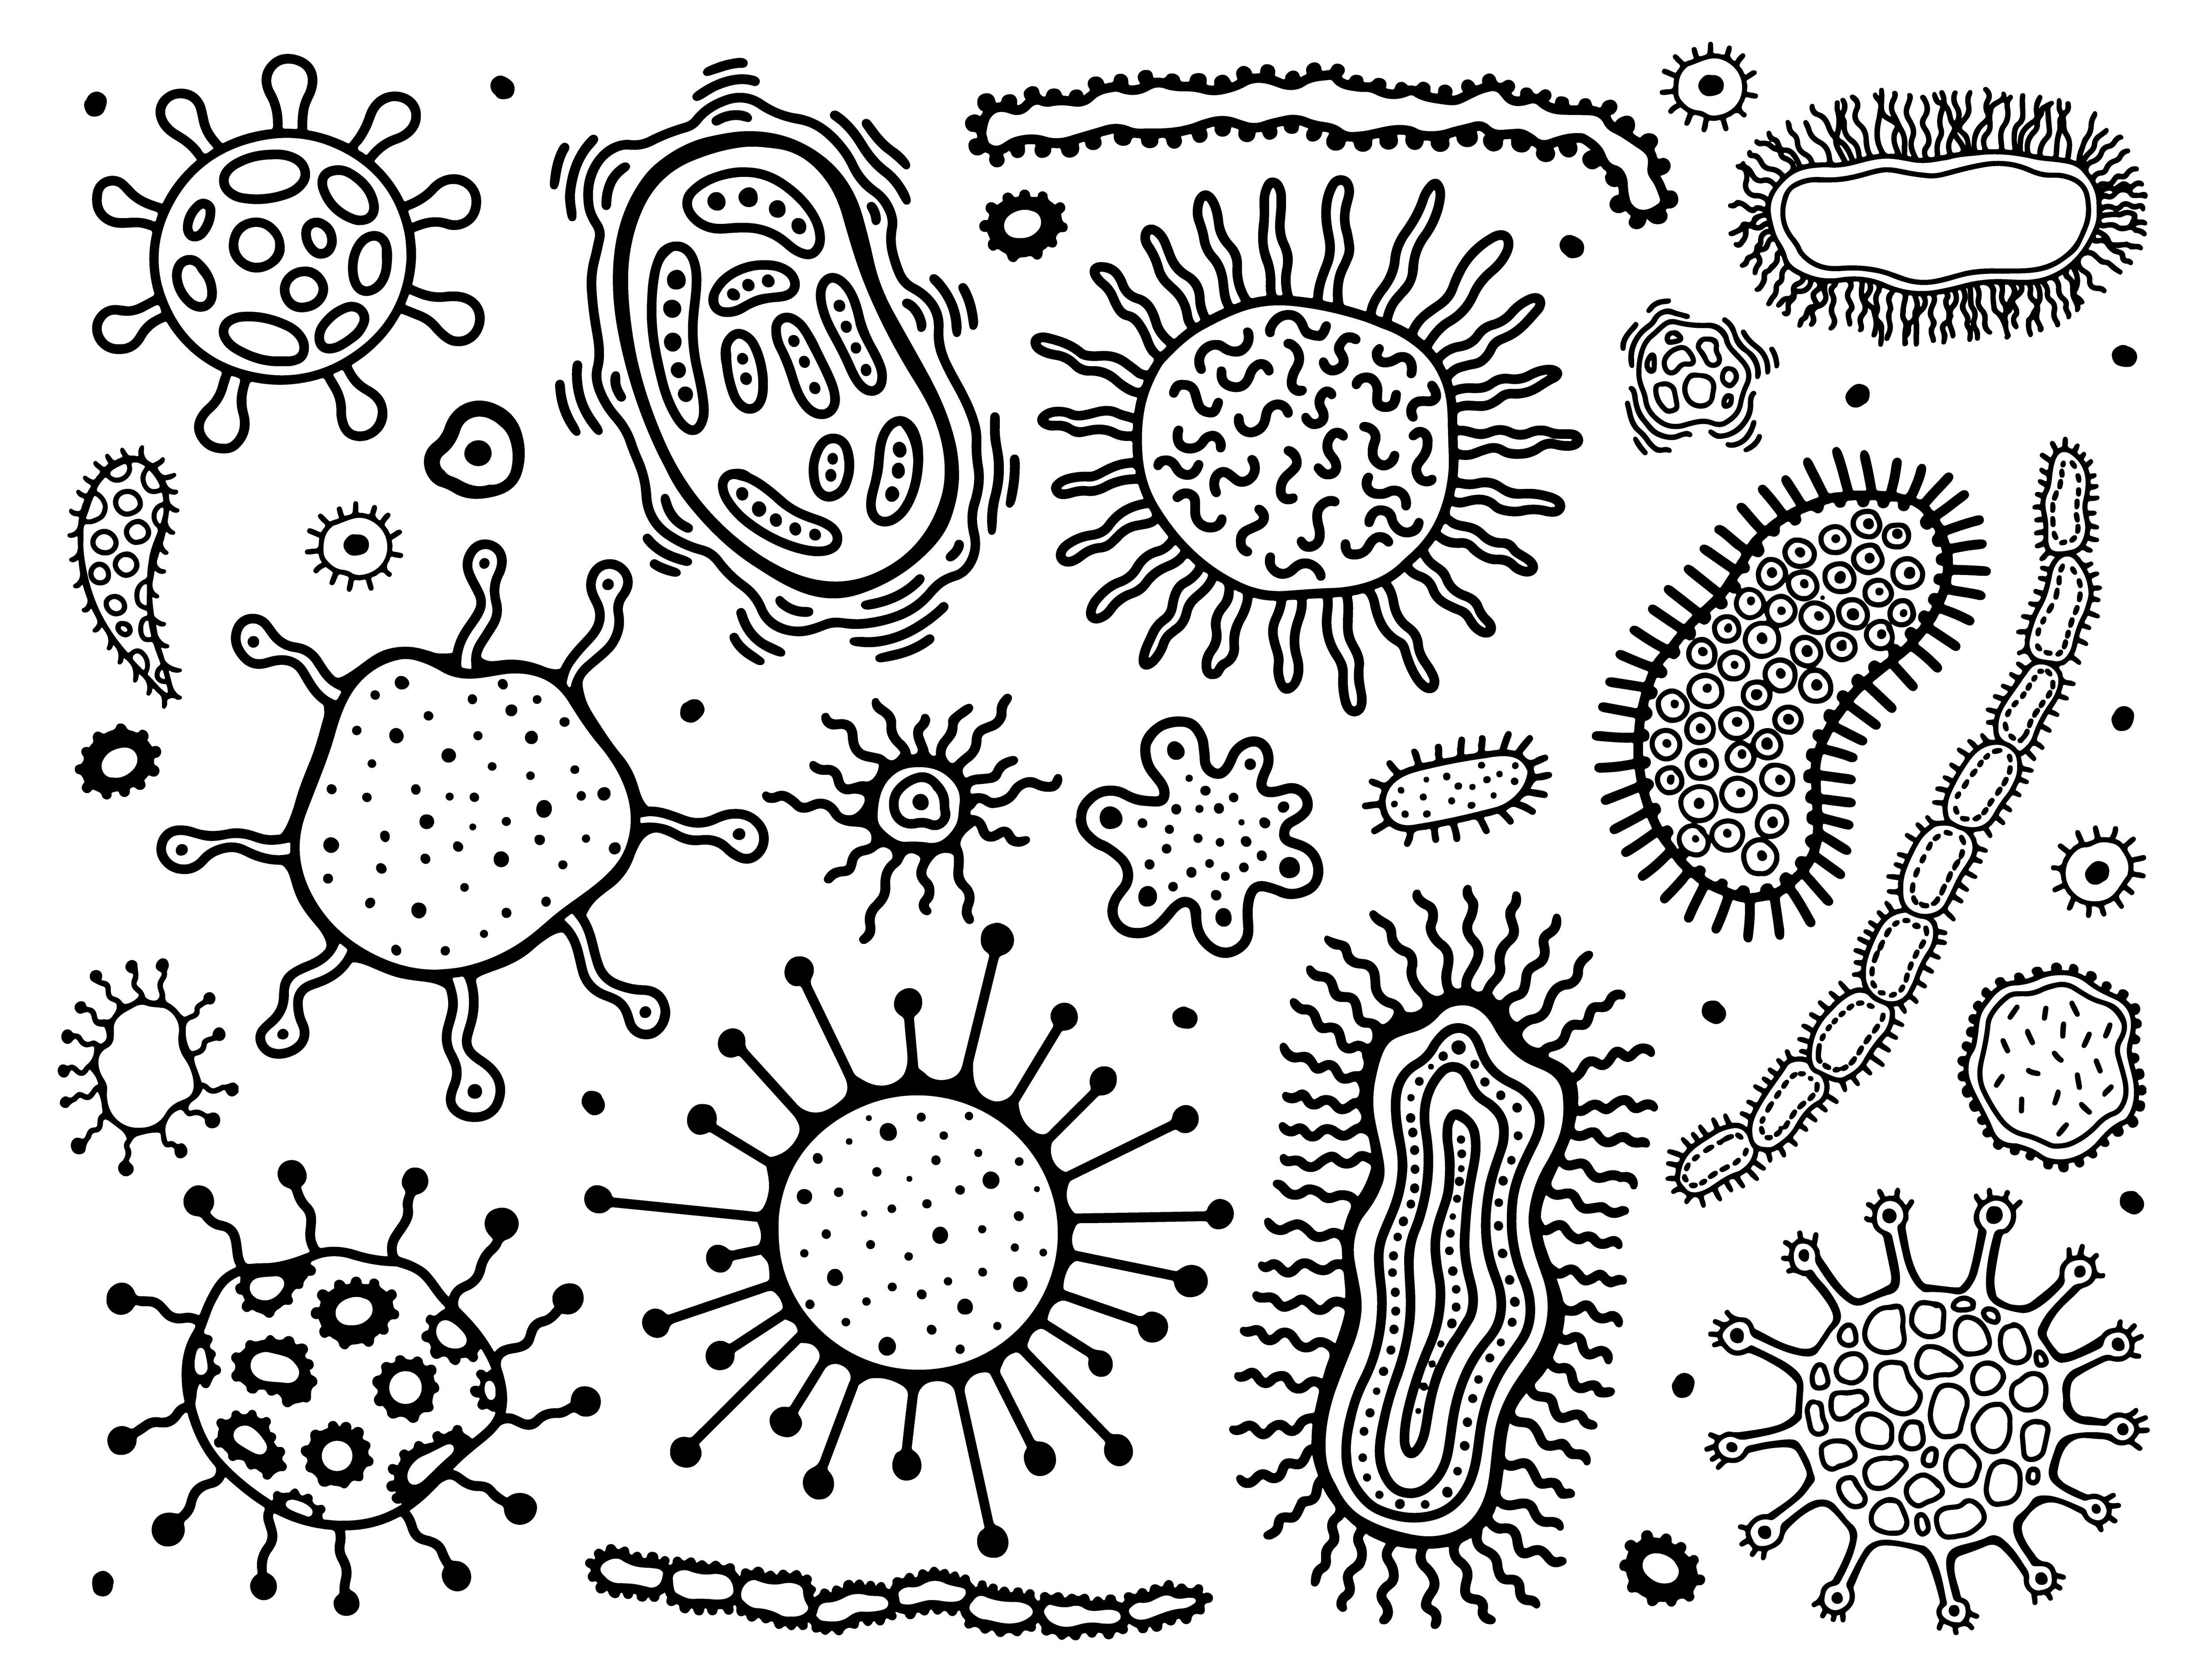 Объект изображенный на рисунках вызывает инфекционное заболевание. Раскраска вирусы и микробы для детей. Бактерии раскраска. Раскраска бактерии и вирусы. Раскраска микробы и бактерии для детей.